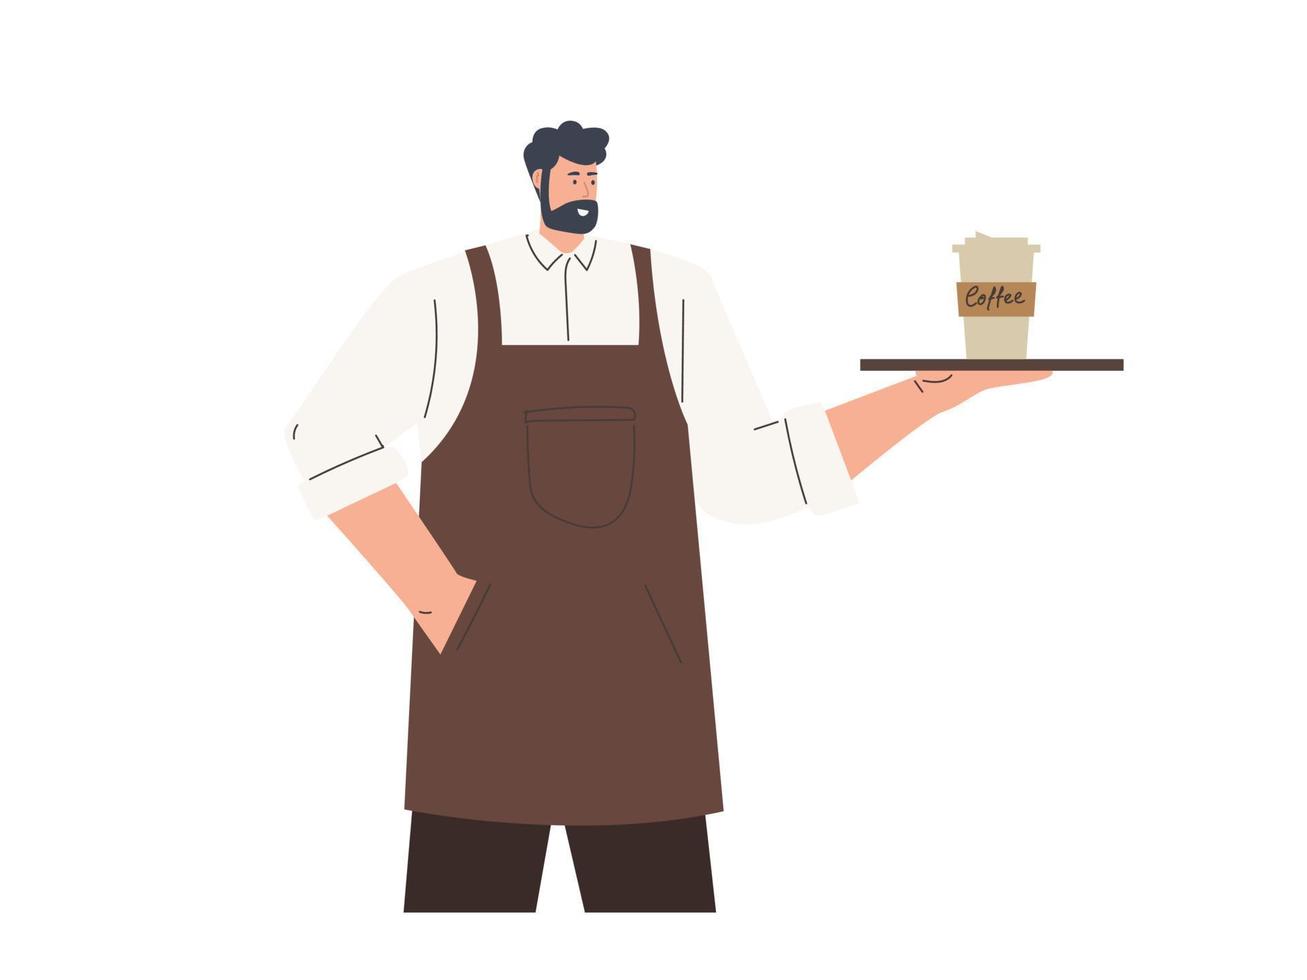 manlig Barista eller servitör tecken i enhetlig, restaurang eller kaffe affär vektor